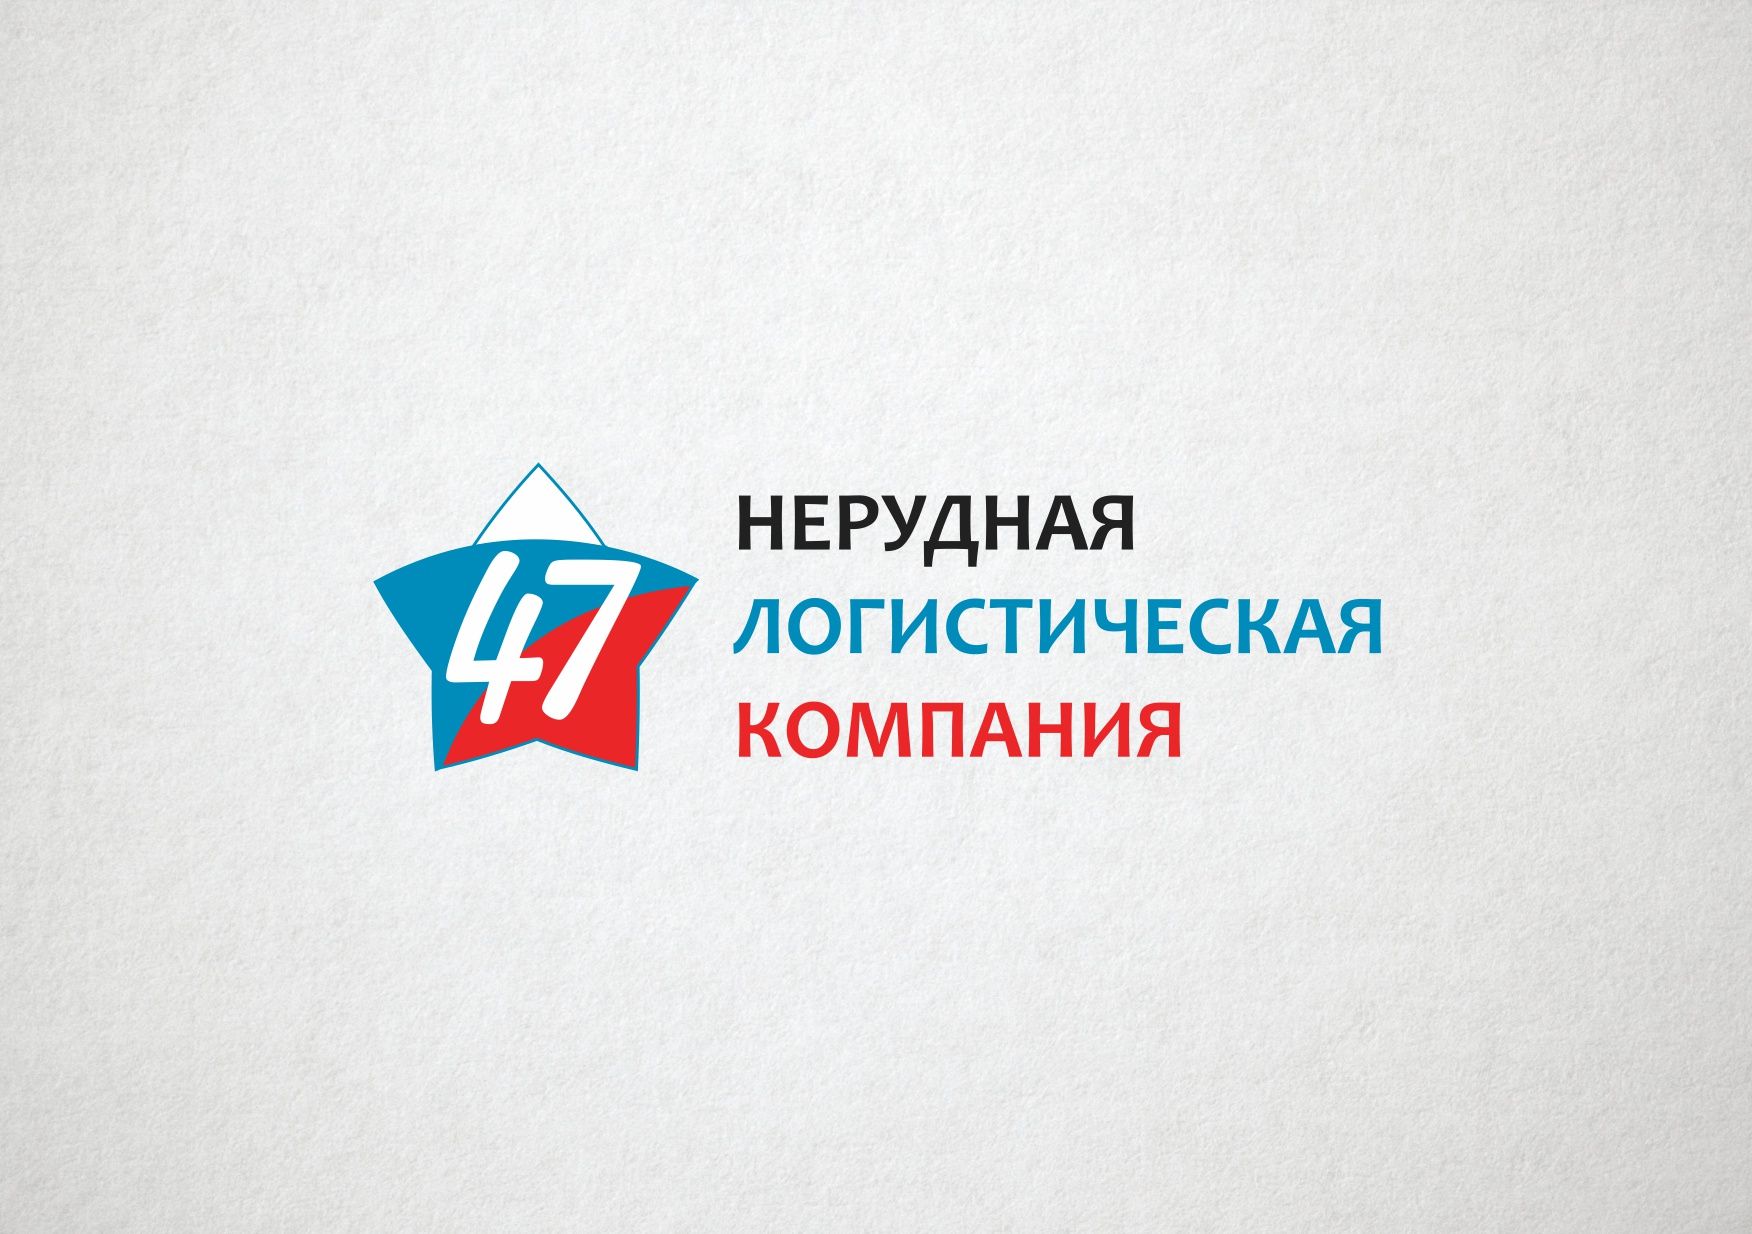 Лого и фирменный стиль для Нерудная логистическая компания 47 (НЛК 47) - дизайнер VictorAnri